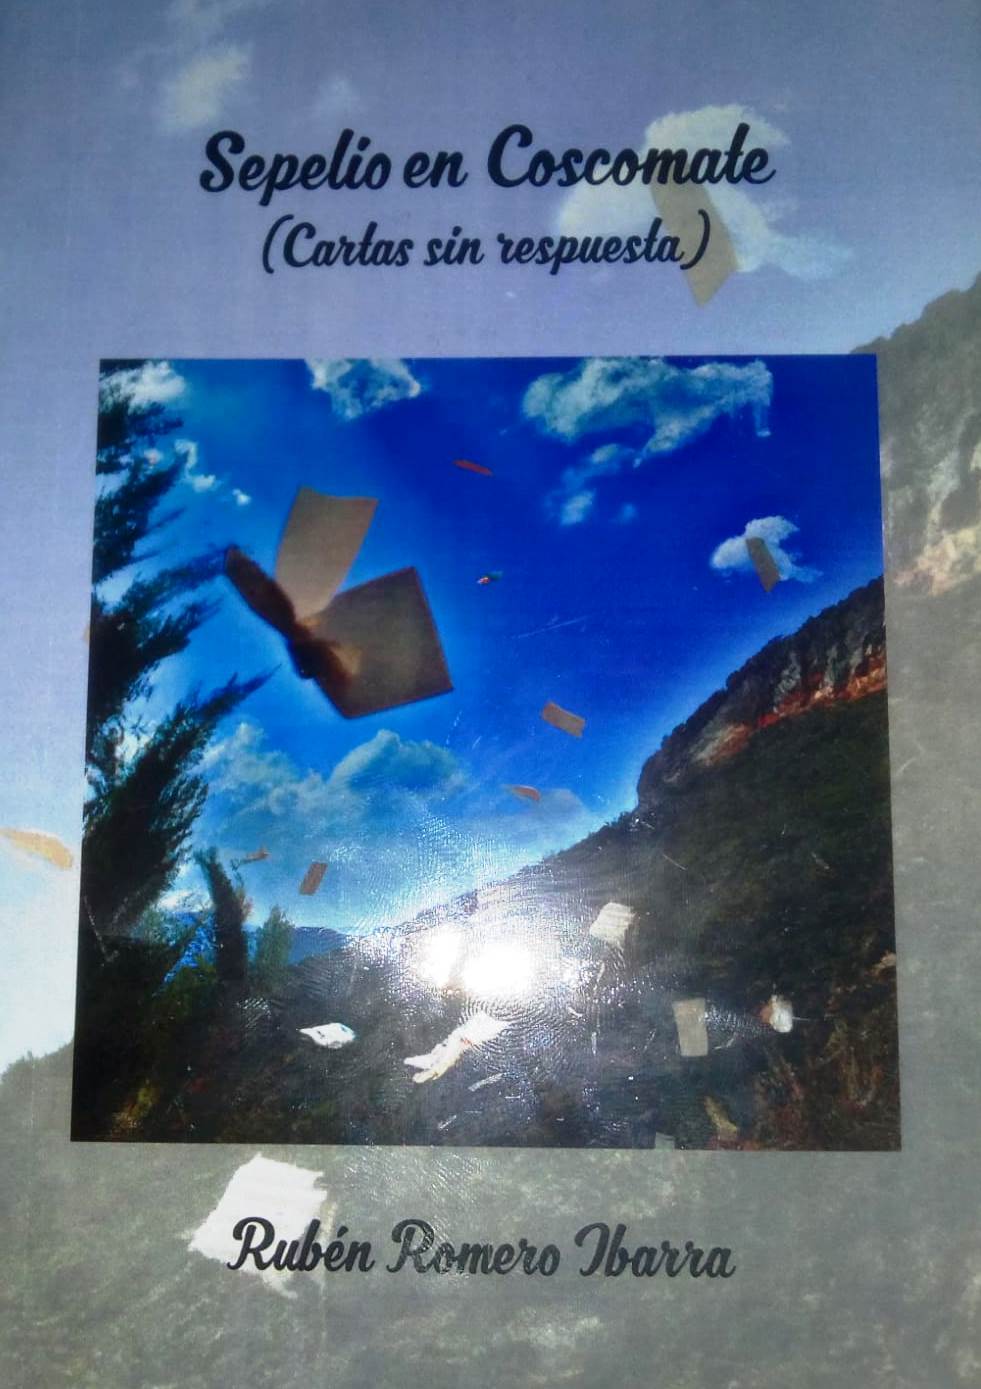 Libro Sepelio en el Coscomate Durango Rubén Romero Ibarra